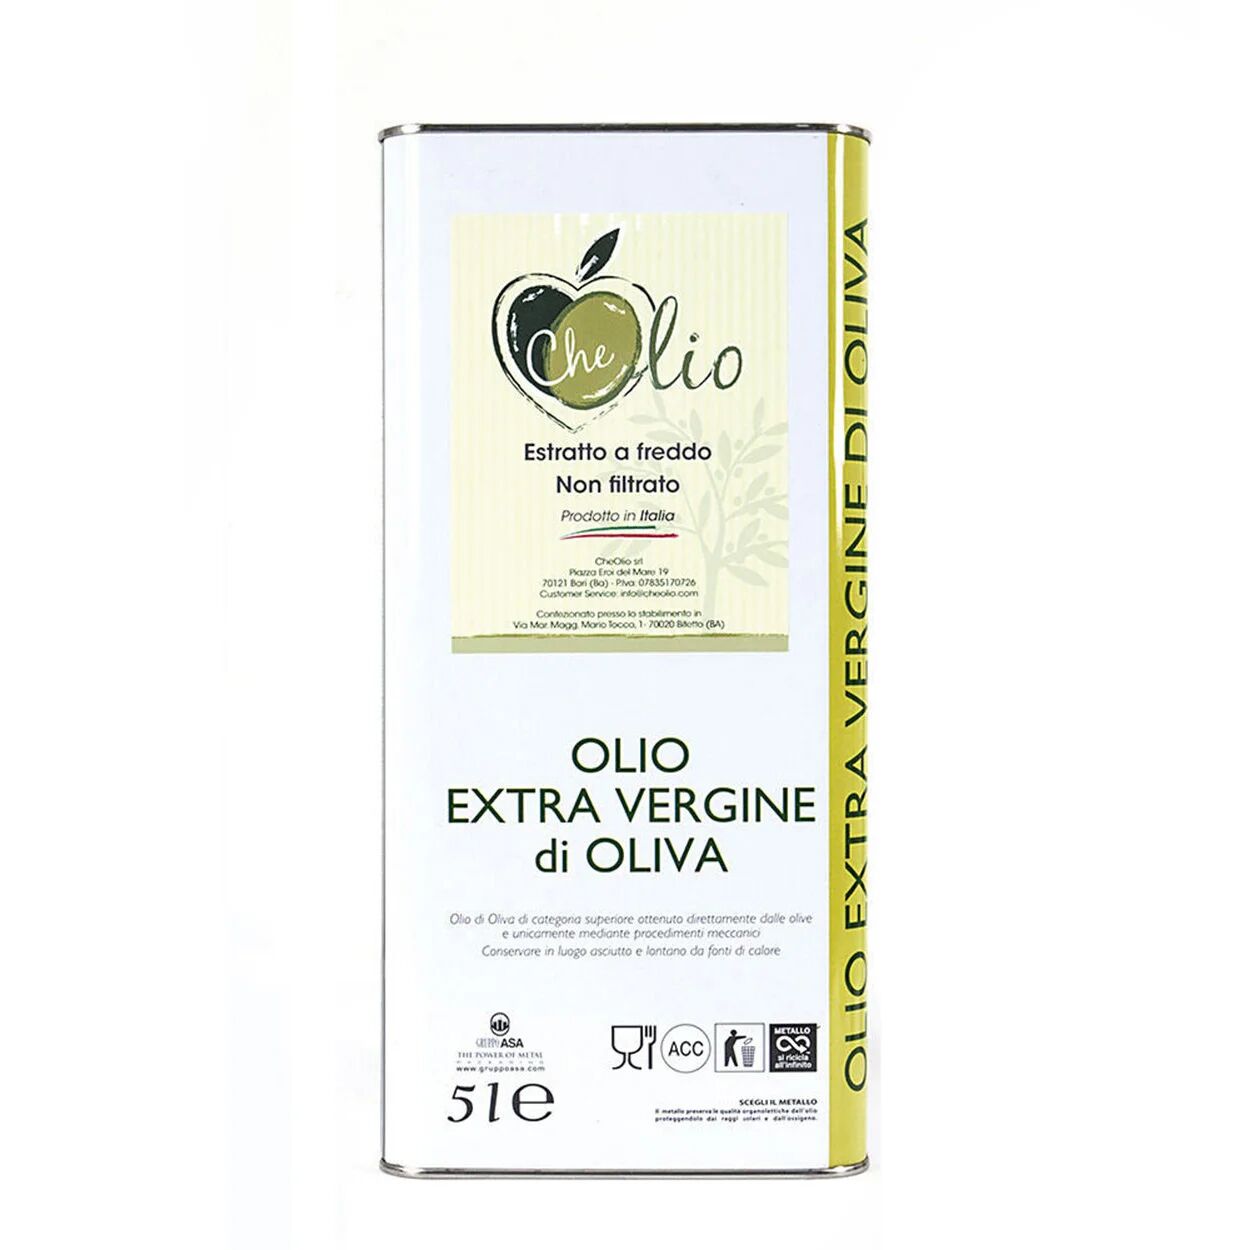 Che Olio 1 latta da 5 lt di olio extravergine d'oliva estratto a freddo e non filtrato